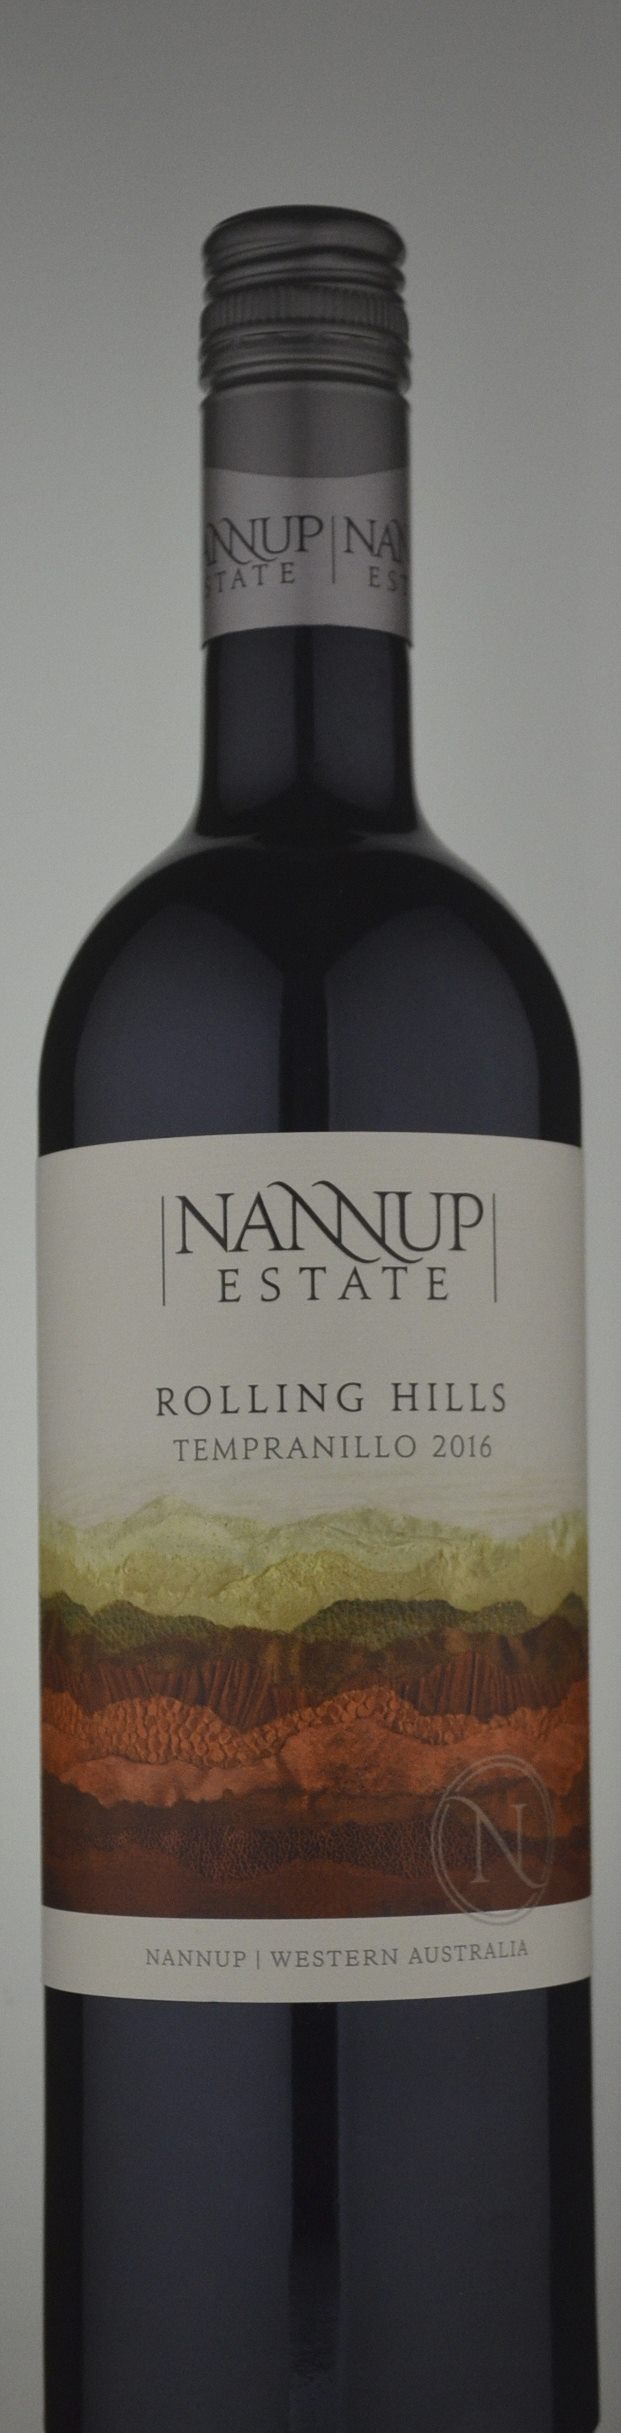 Nannup Estate Rolling Hills Tempranillo 2016